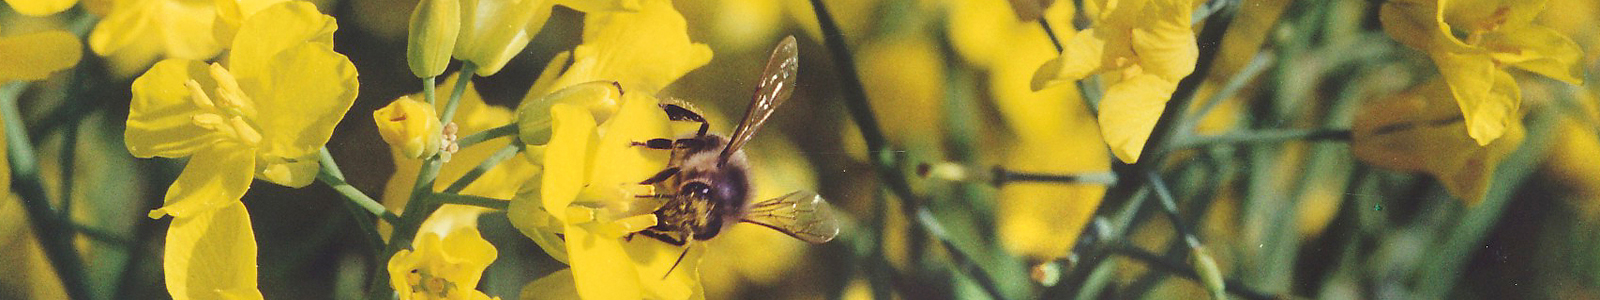 Eine Biene auf gelber Blume ©DLR